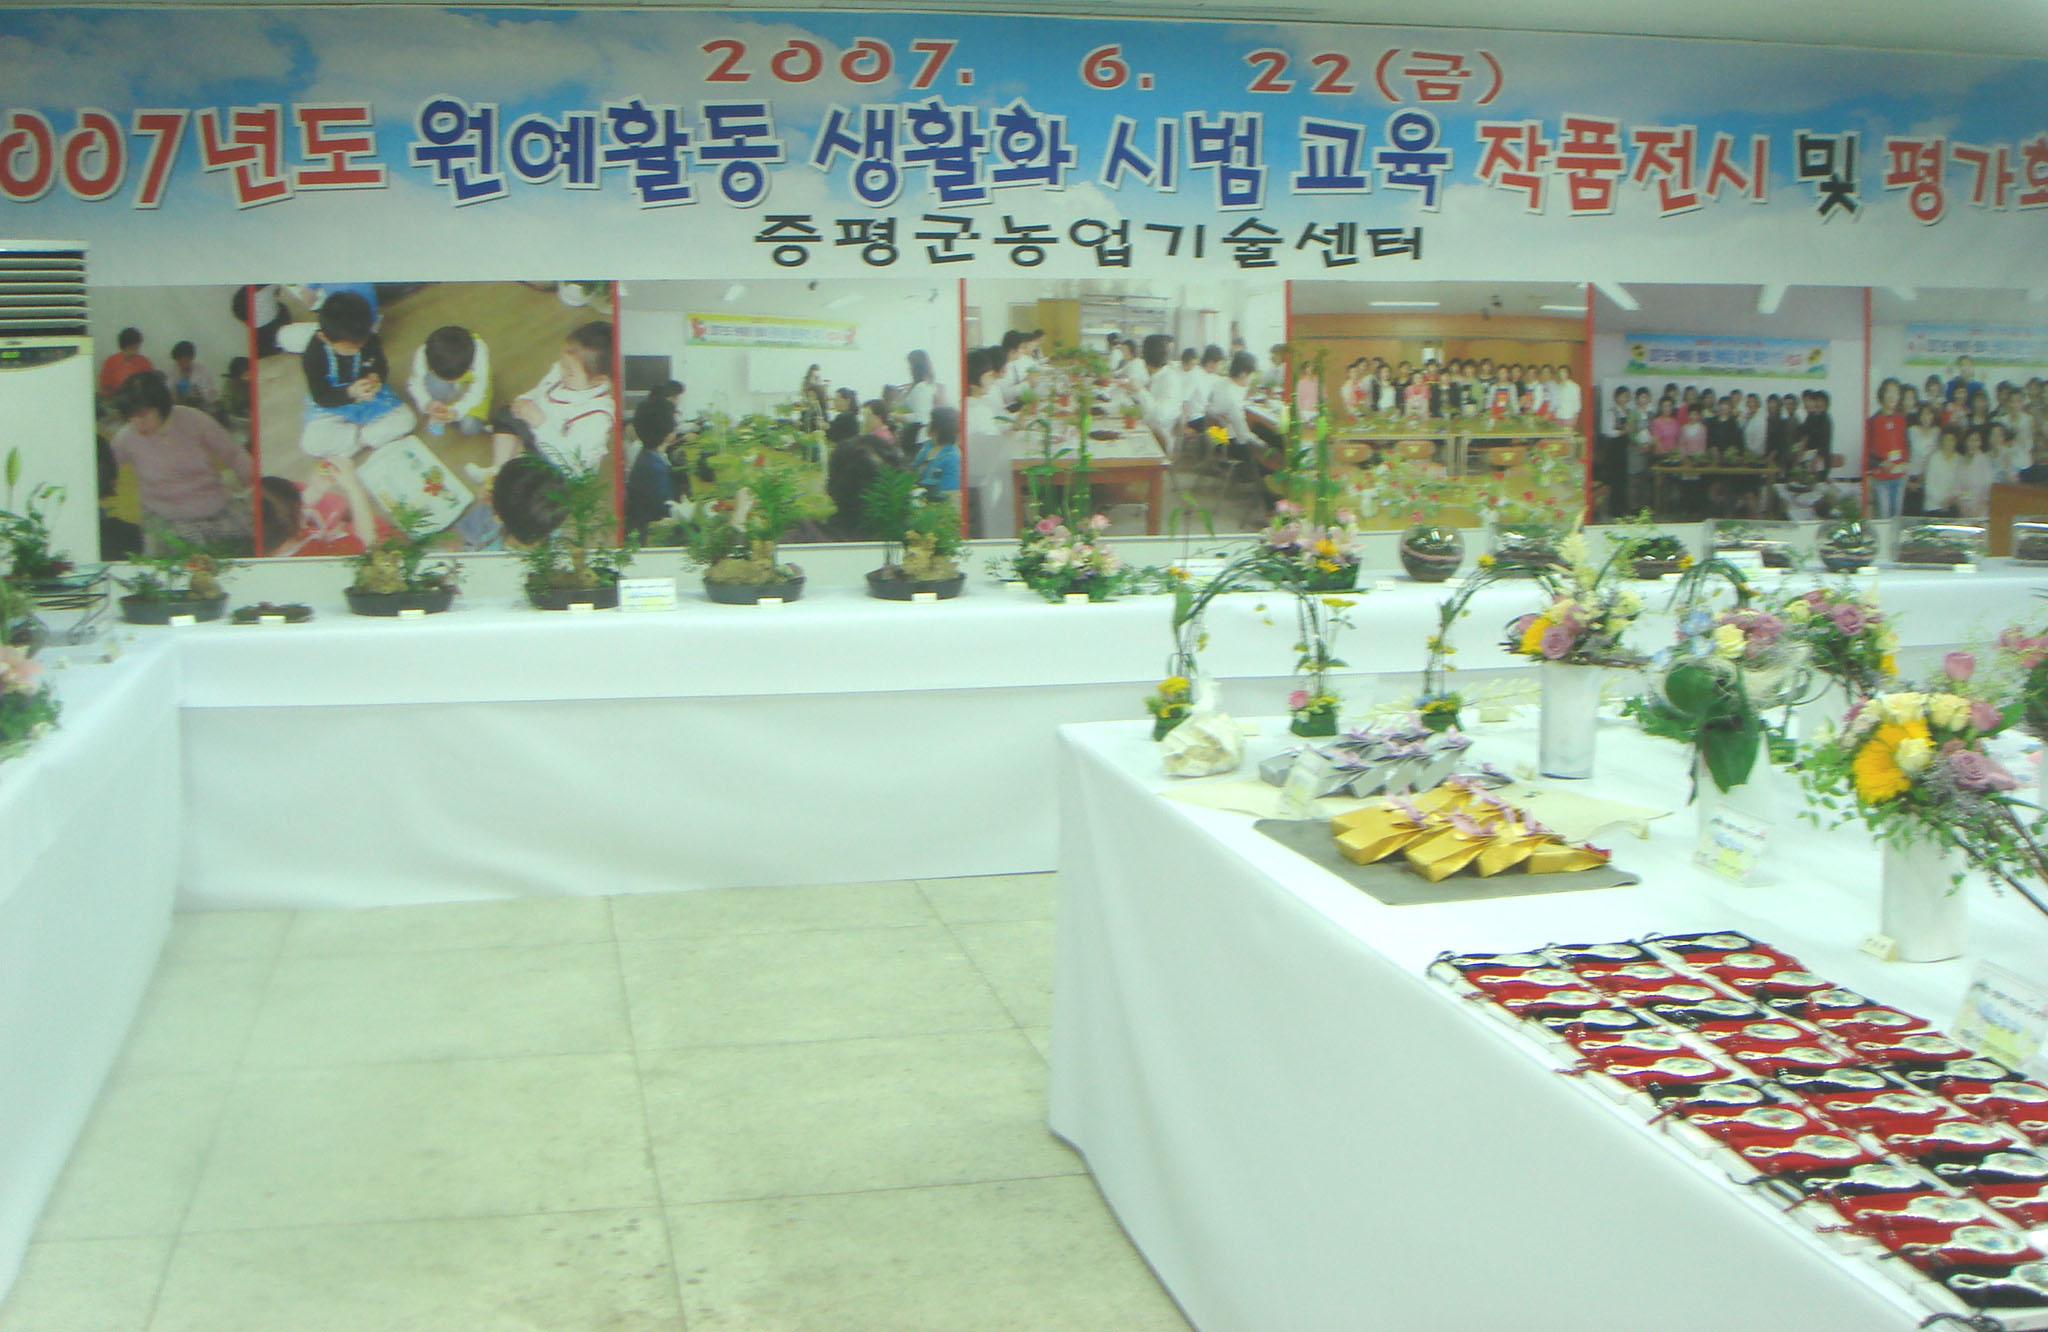 원예활동생활화사업 작품전시 및 평가회 개최